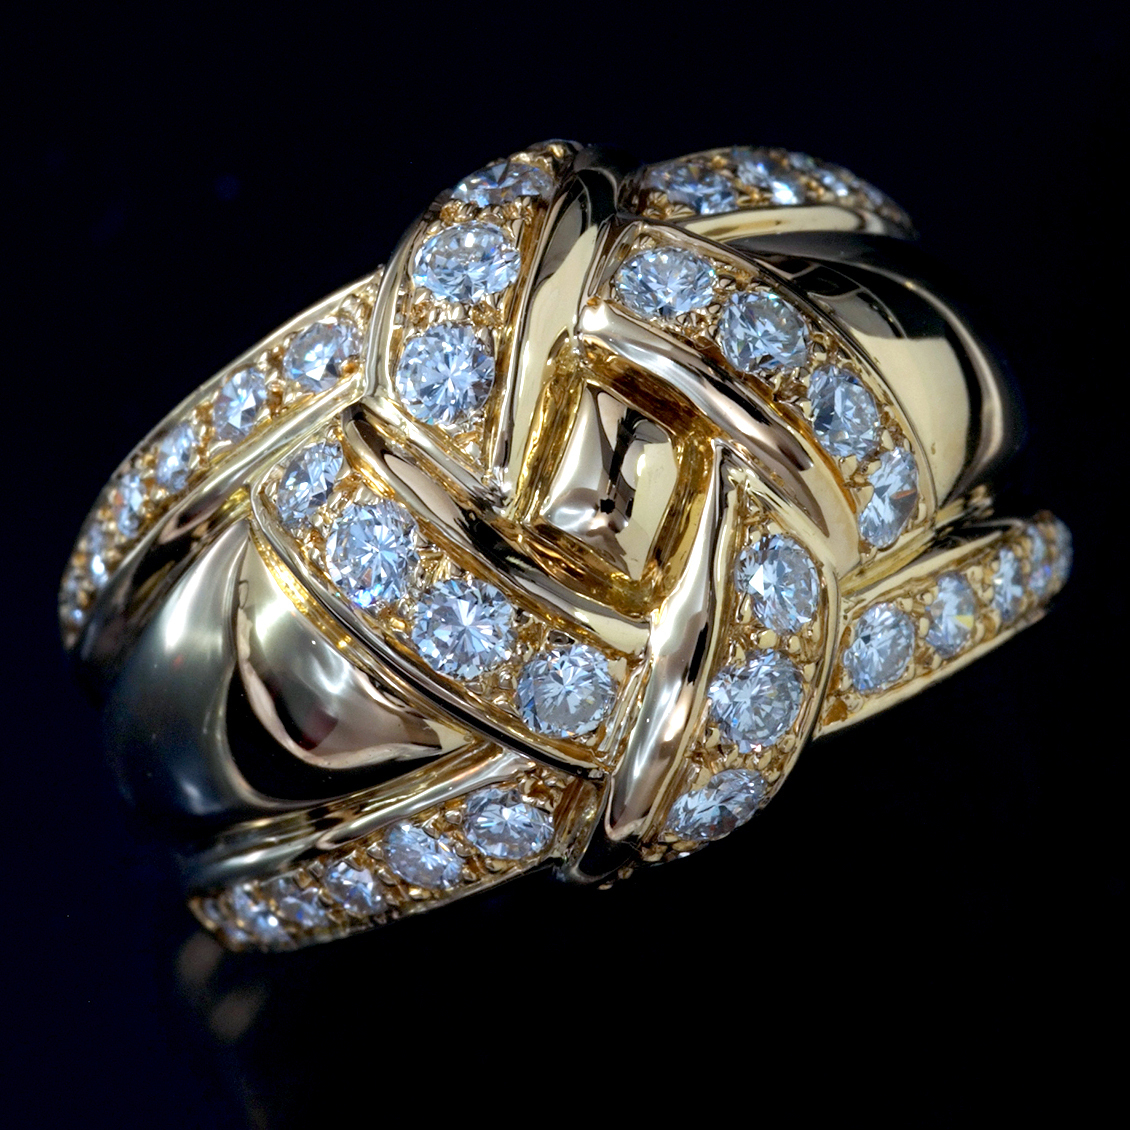 F0830【Dior】ディオール 天然絶品ダイヤモンド 最高級18金無垢セレブリティリング サイズ18号 重量13.35g 縦幅15.7mm